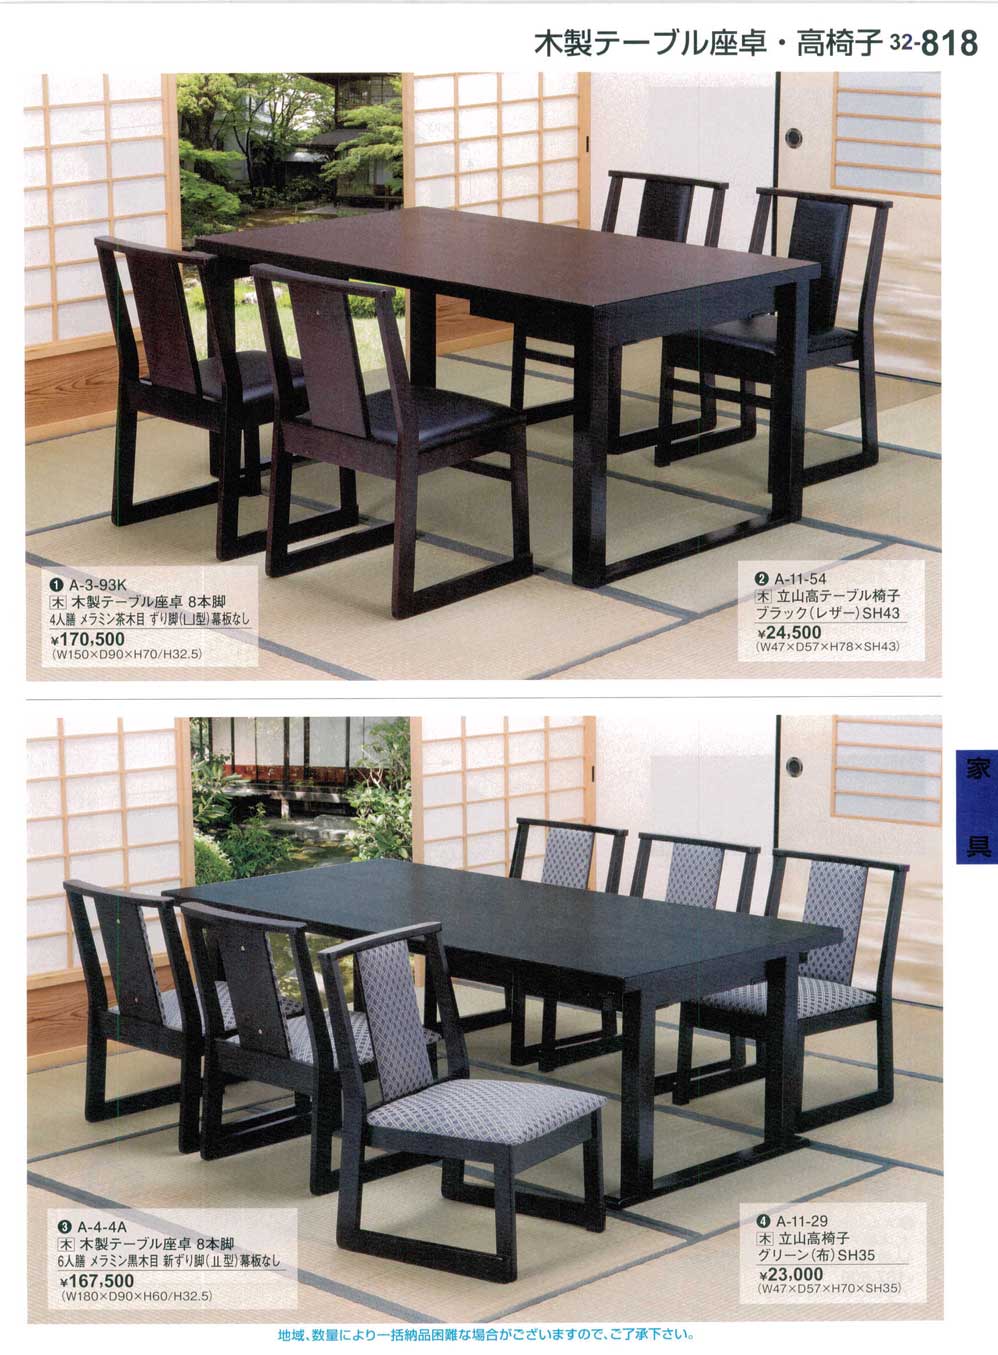 食器 木製テーブル座卓・高椅子Japanese-style Wooden Low Tables 割烹